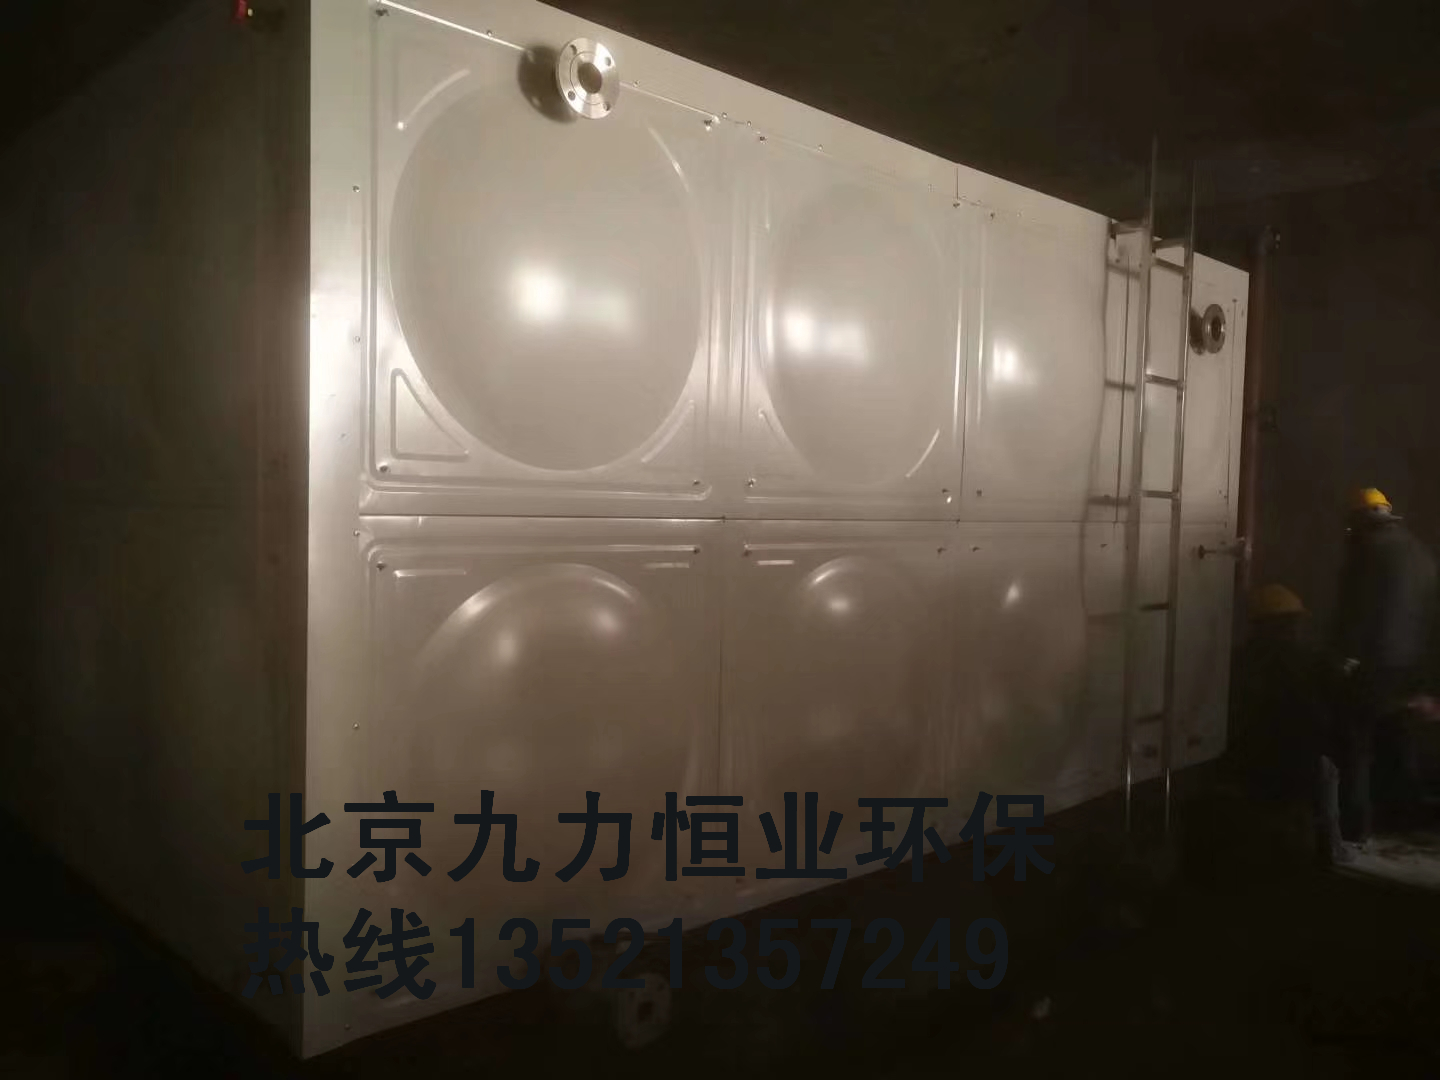 搪瓷水箱不锈钢水箱九力恒业厂家定做搪瓷水箱不锈钢水箱定制各种多种规格水箱